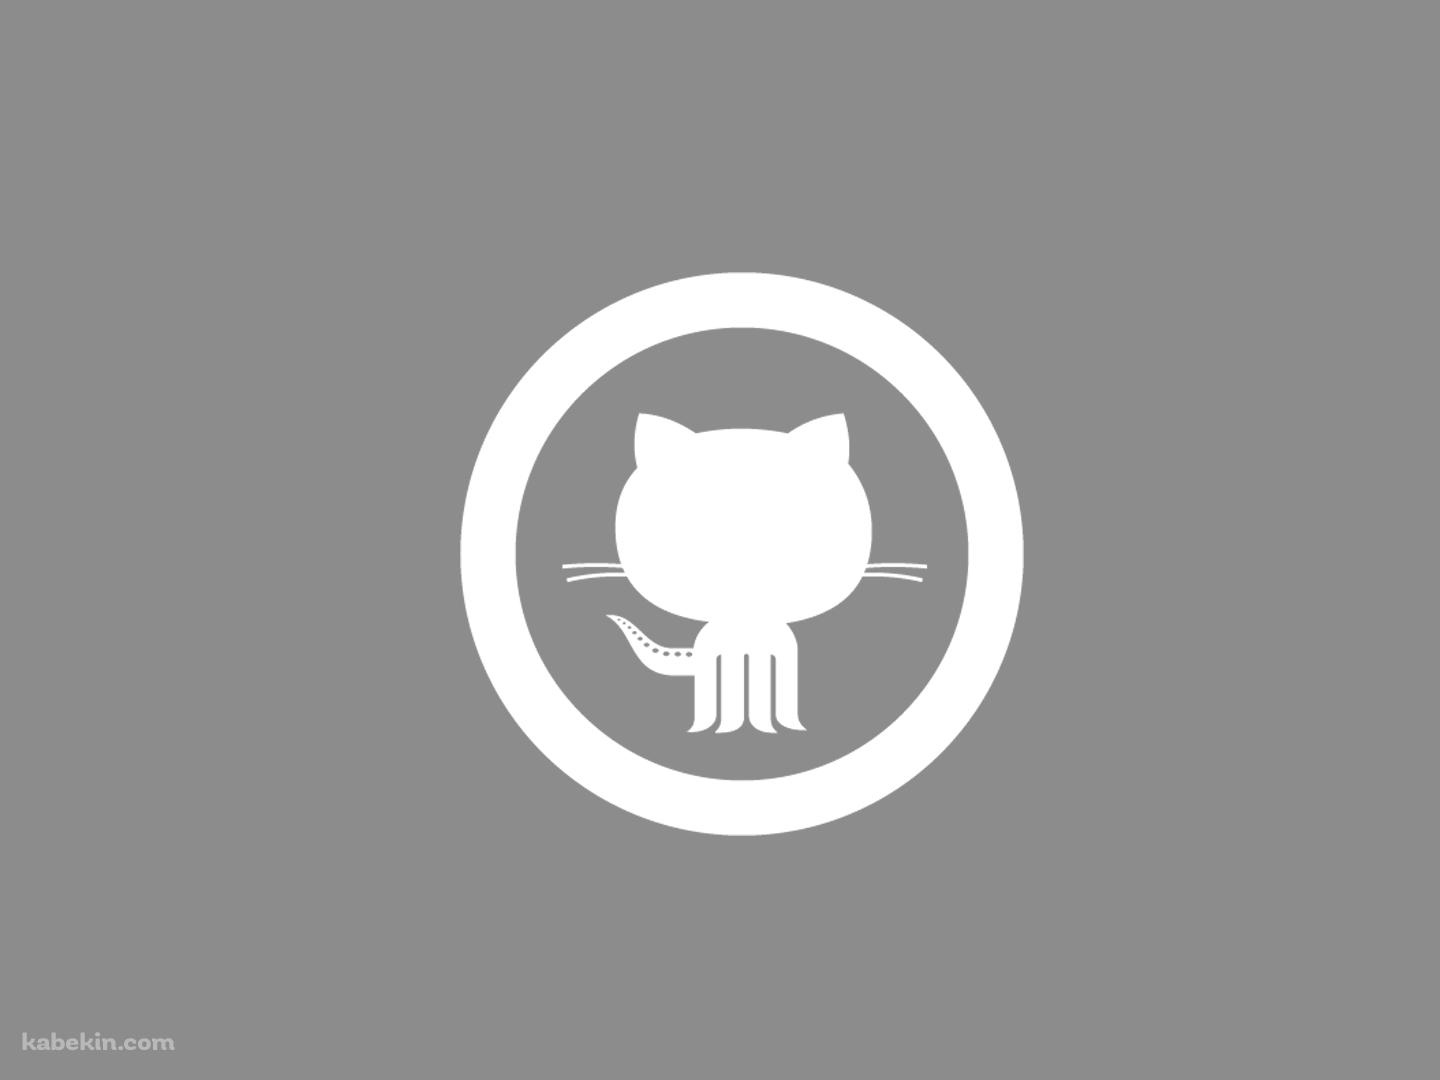 GitHubのロゴの壁紙(1440px x 1080px) 高画質 PC・デスクトップ用